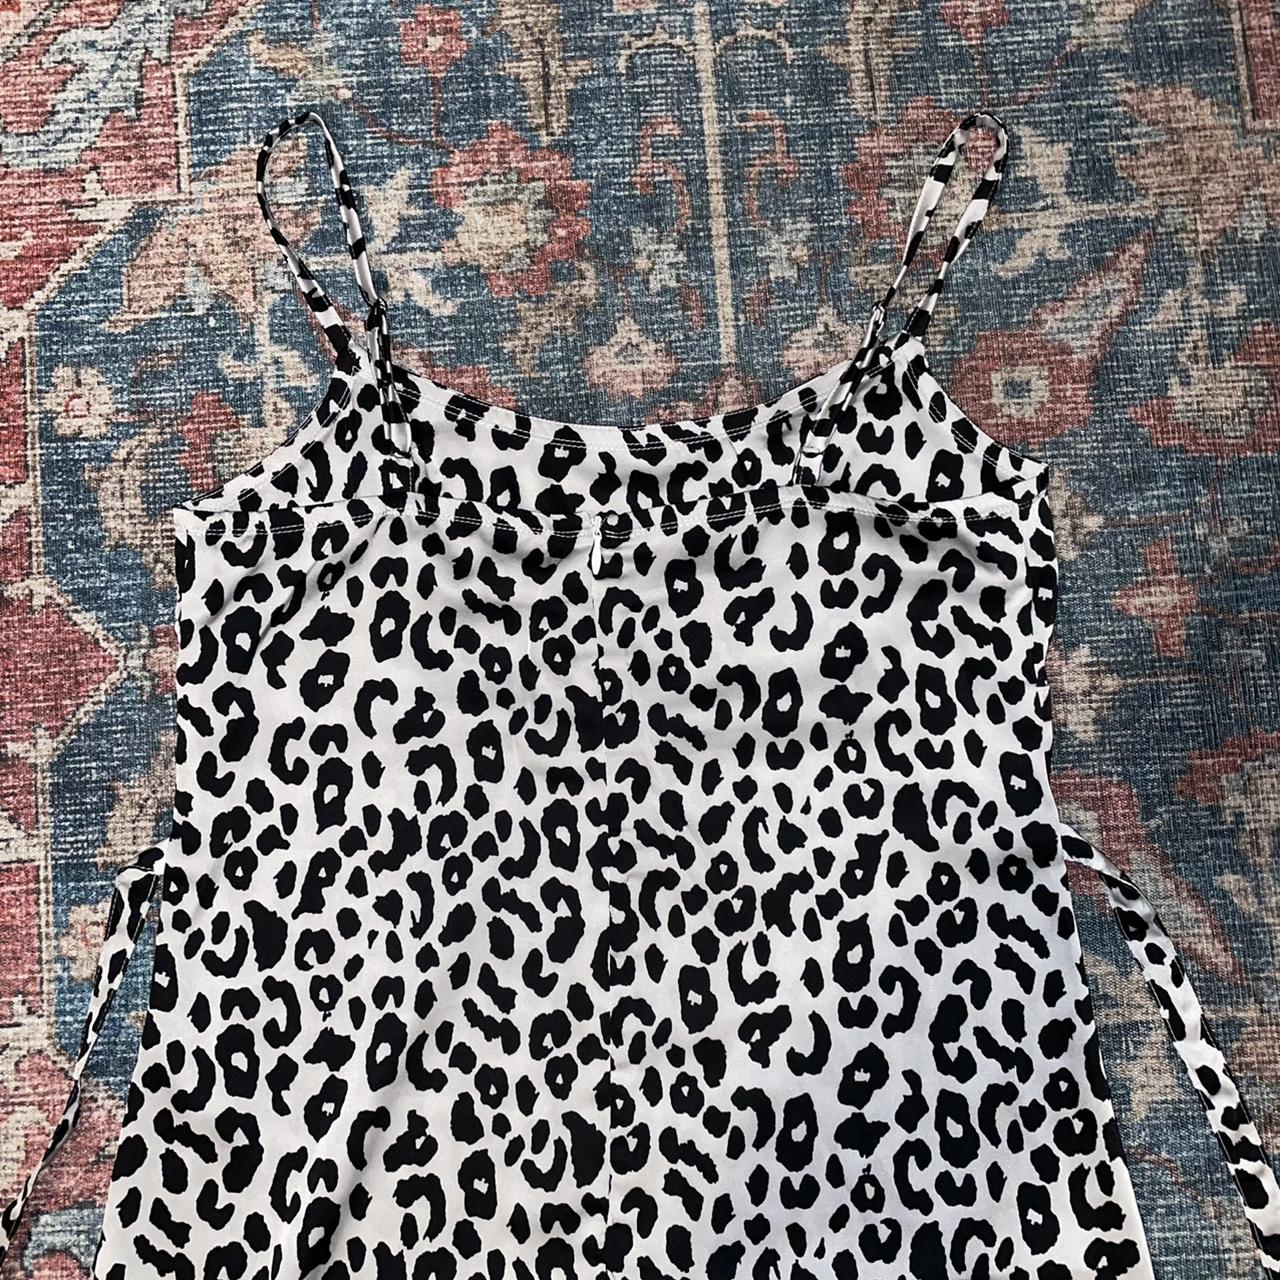 Brandy Melville satin cheetah dress! Never worn and... - Depop